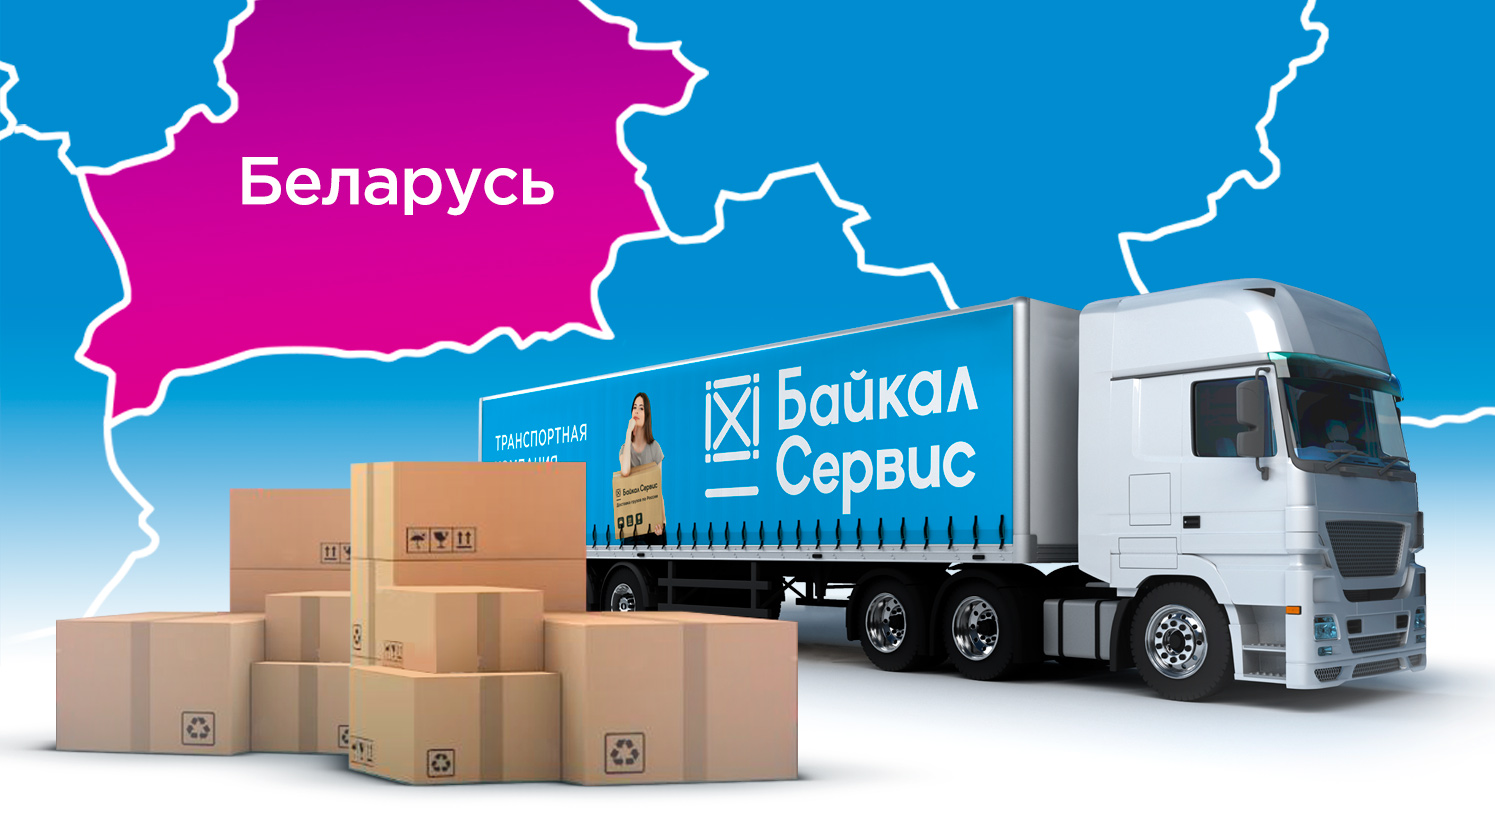 Байкал Сервис запустил доставку до РЦ Вайлдберриз в Республике Беларусь